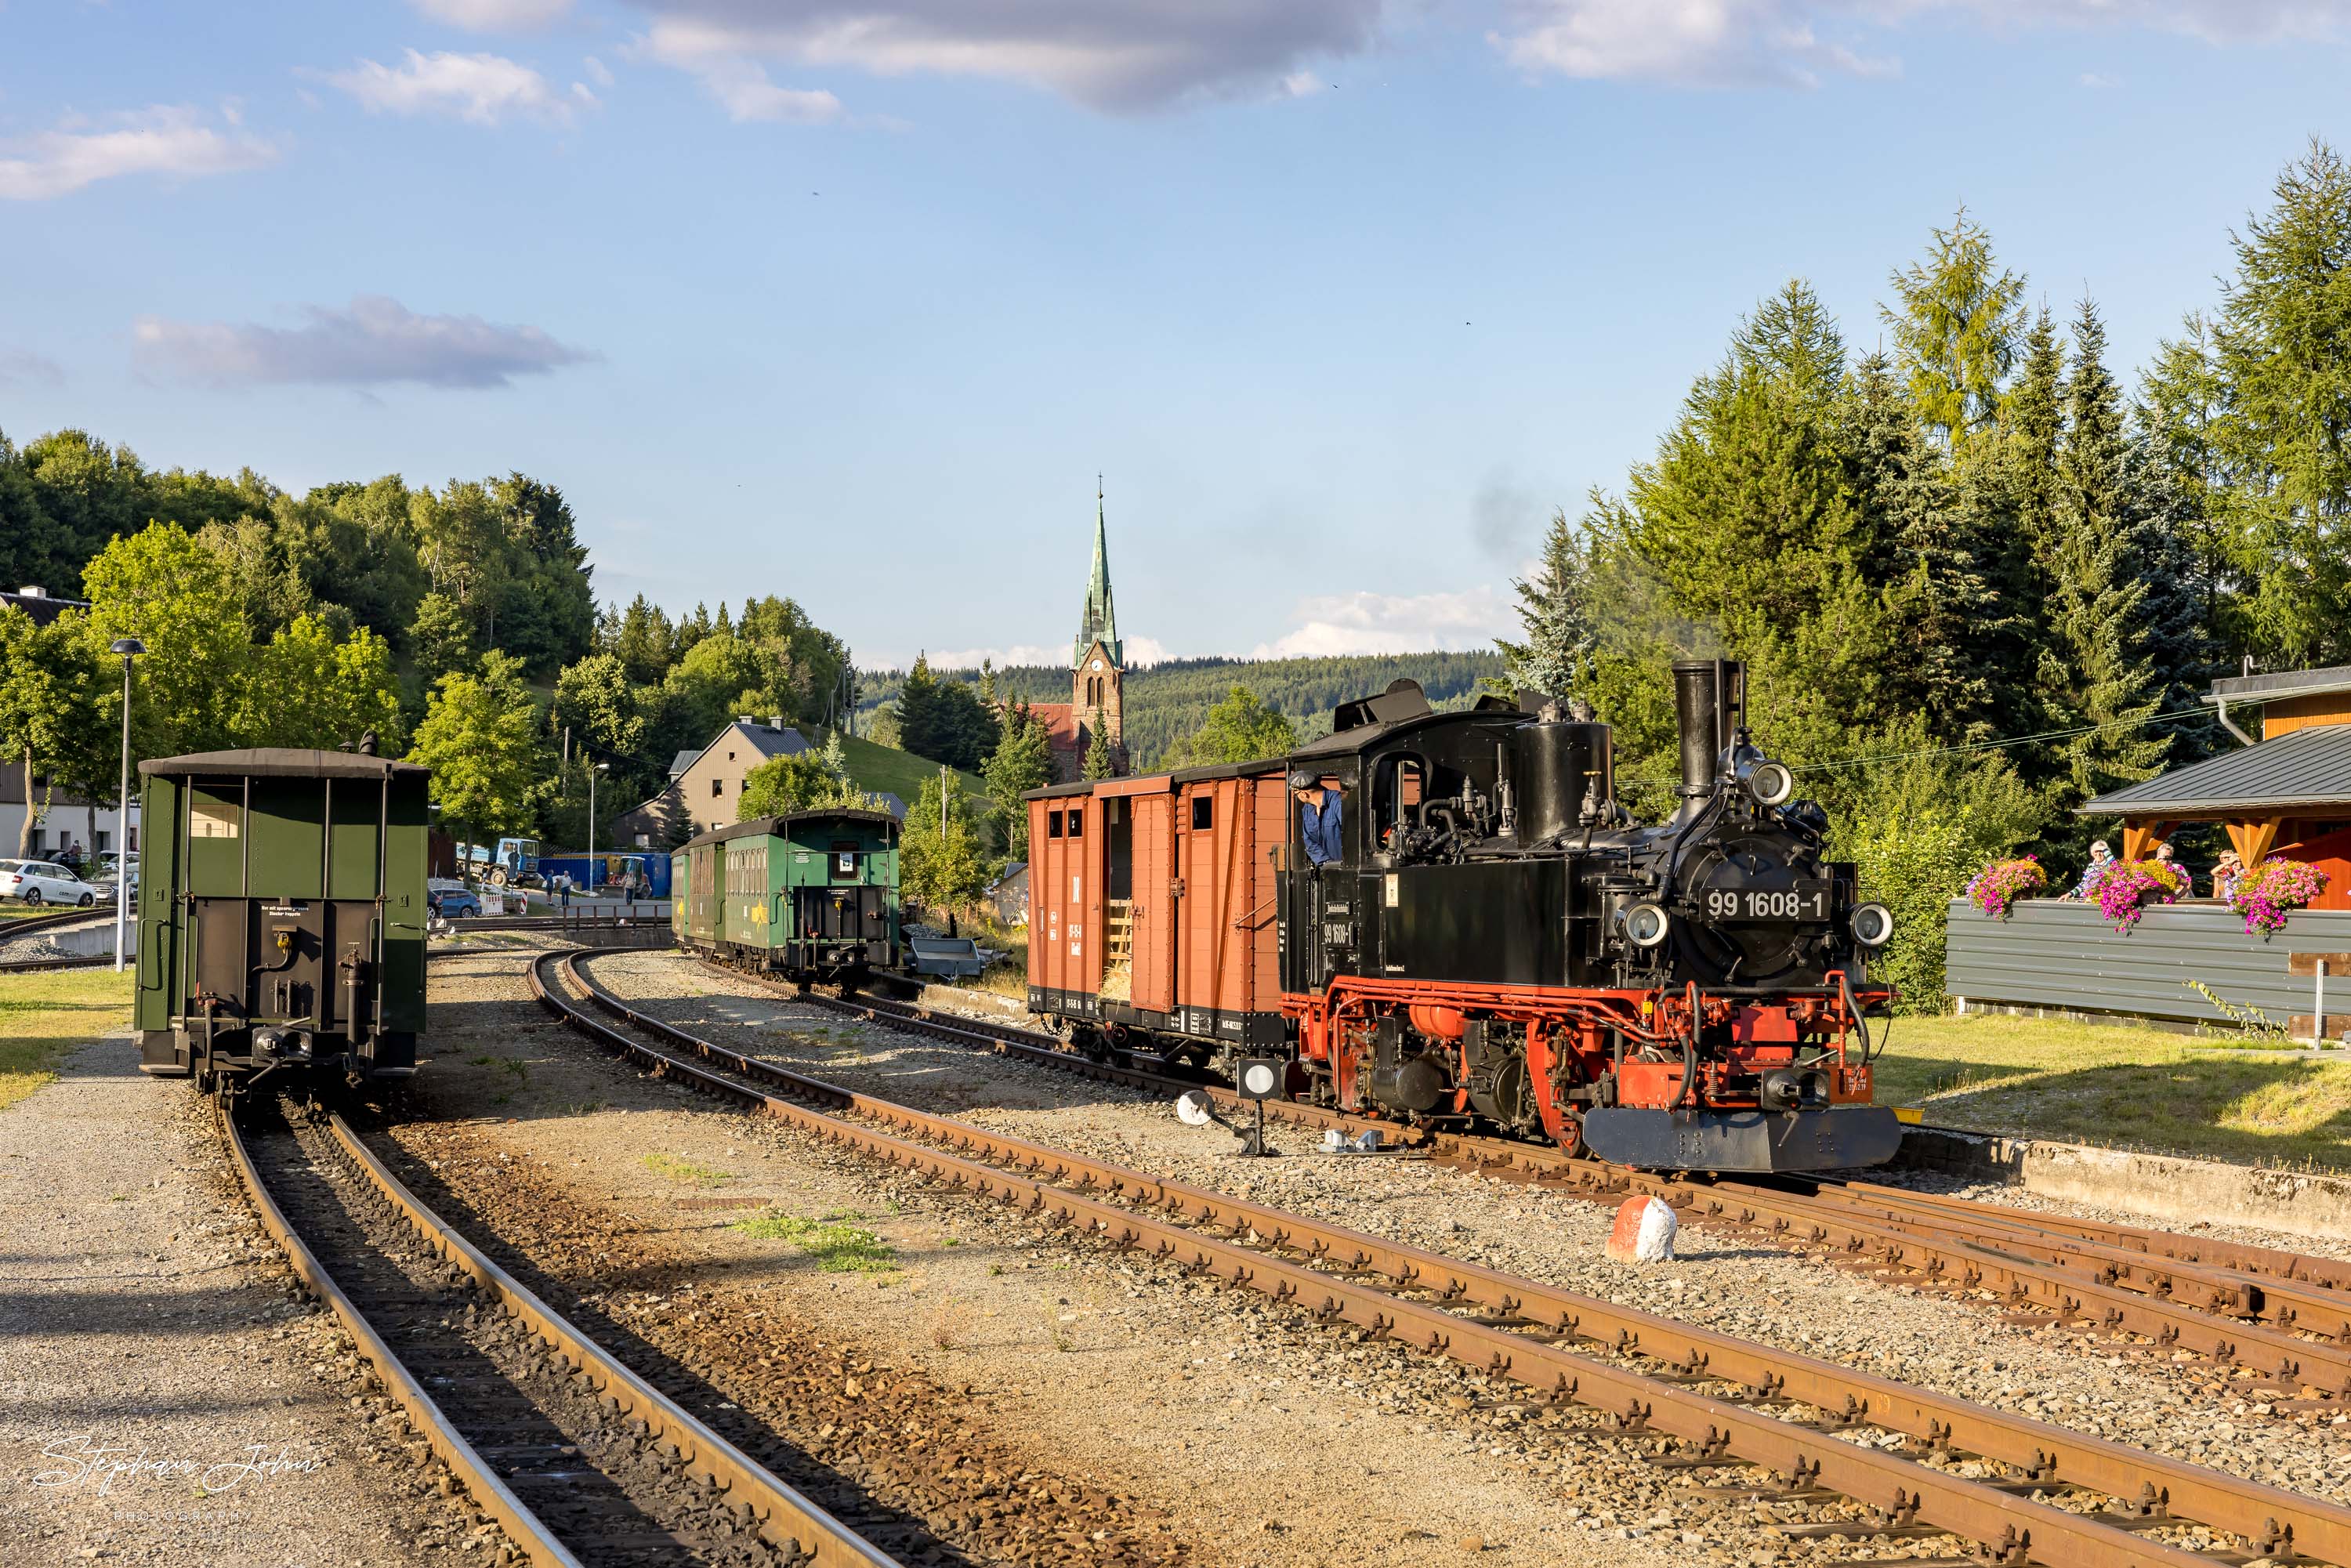 Zug P 1023 mit Lok 99 1608-1 nach Oberwiesenthalsteht in Hammerunterwiesenthal.